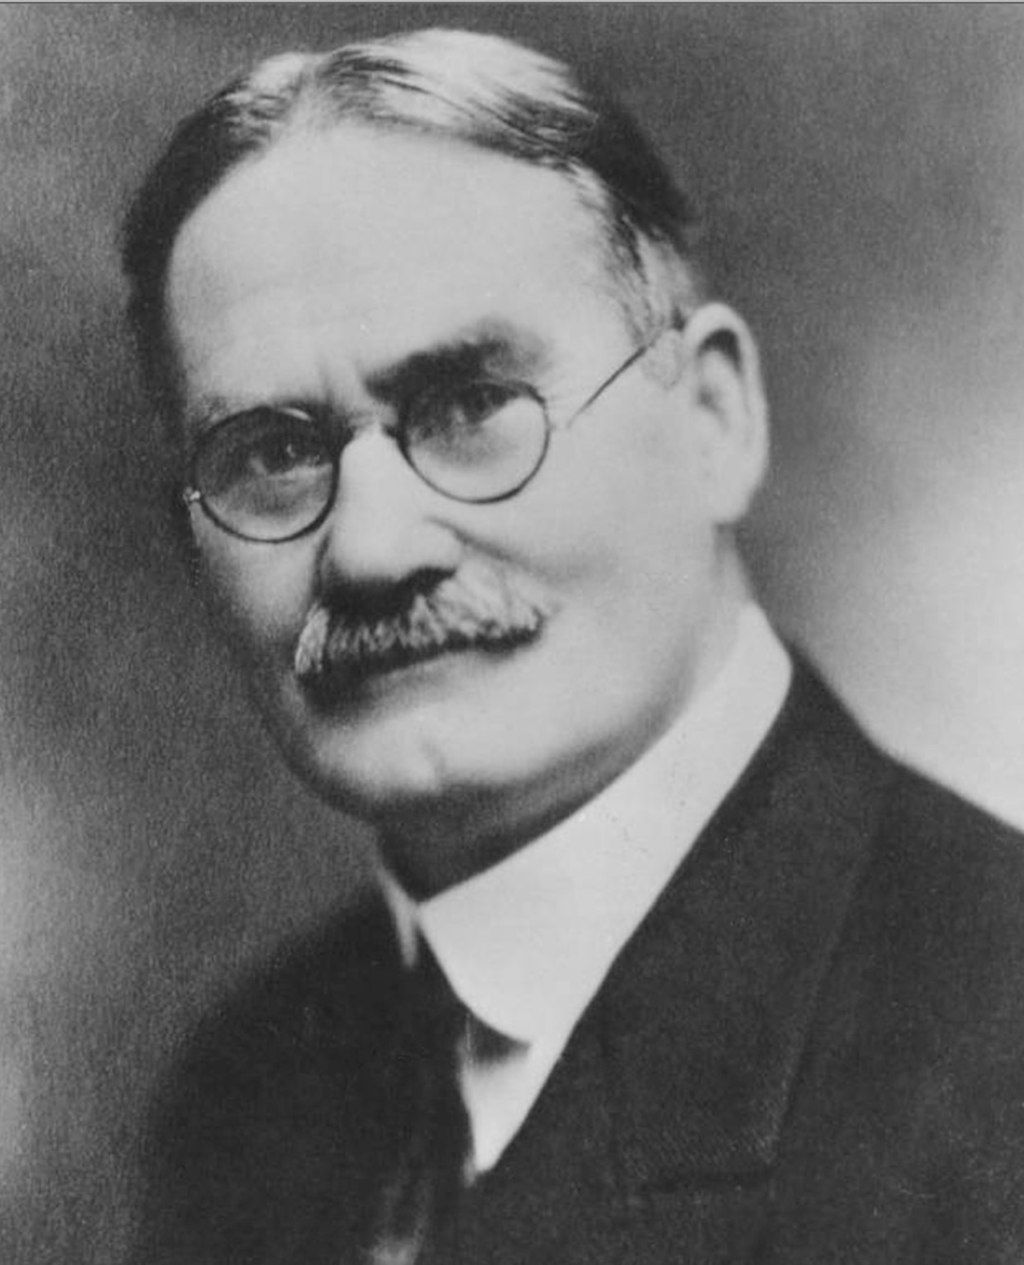 Portrait photograph of Dr. James Naismith.